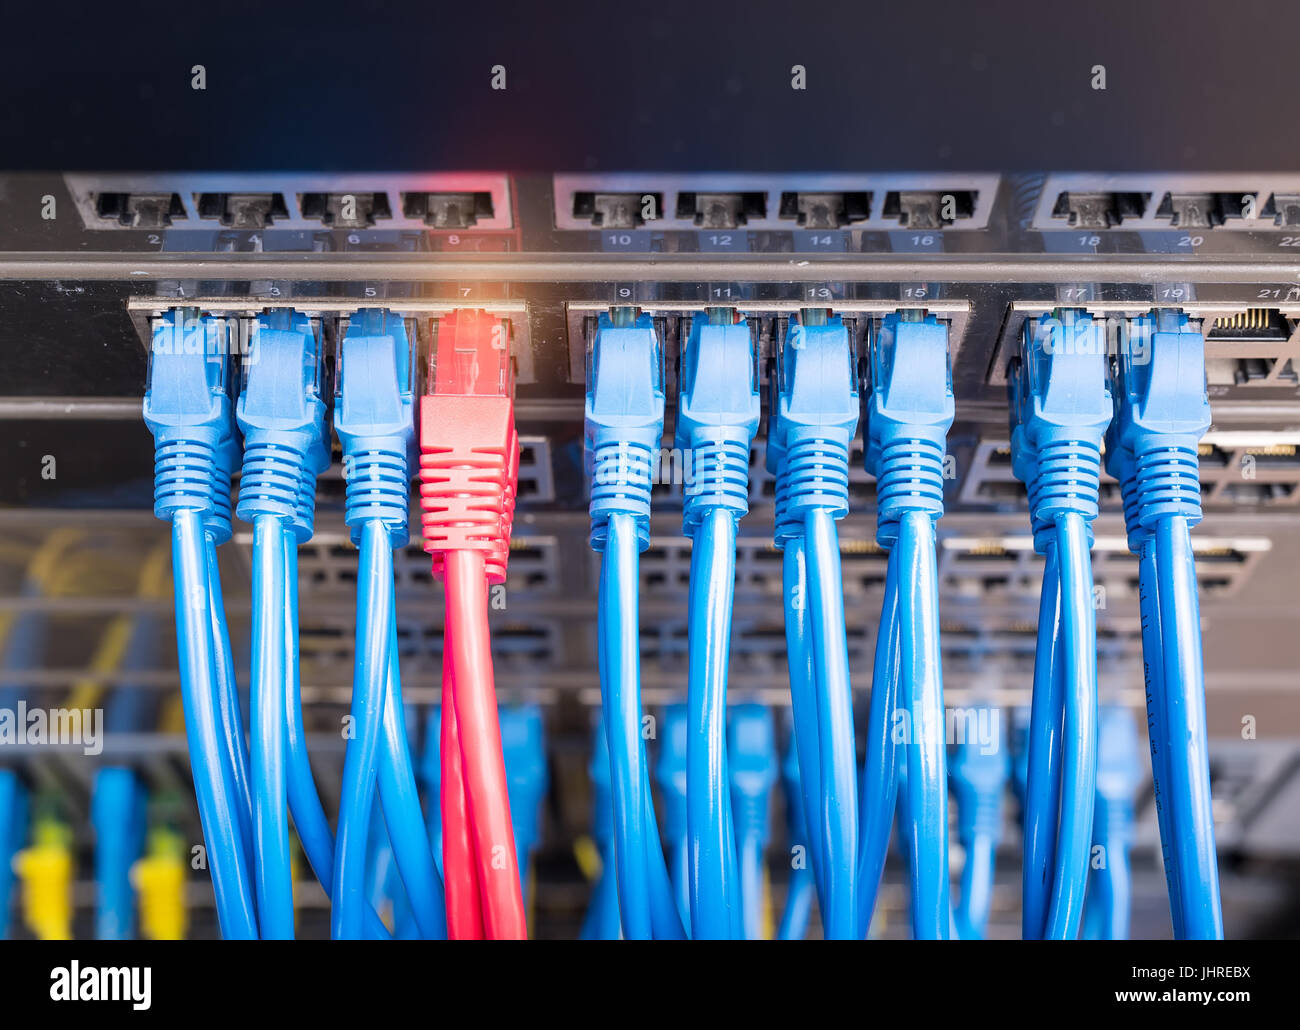 Tecnologia di informazioni di rete di computer, telecomunicazioni cavi Ethernet collegati ad Internet Switch. Foto Stock